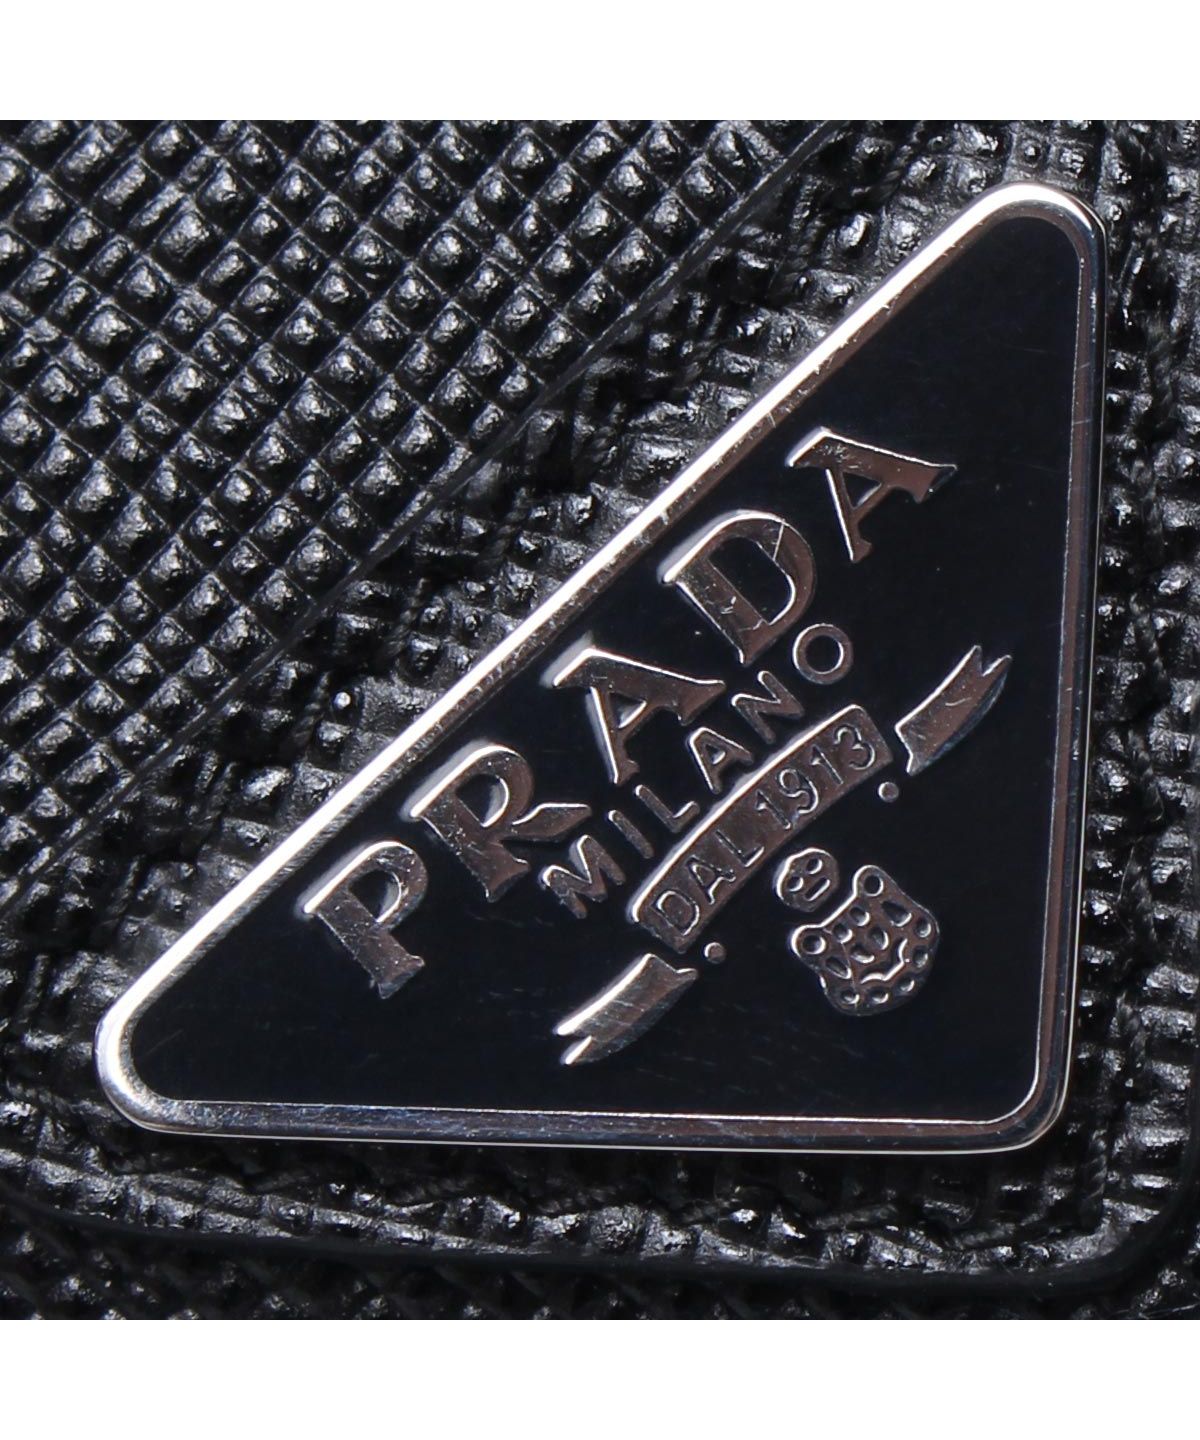 プラダ PRADA パスケース カードケース ID 定期入れ メンズ レディース サフィアーノ CARD CASE ブラック 黒 2MC047